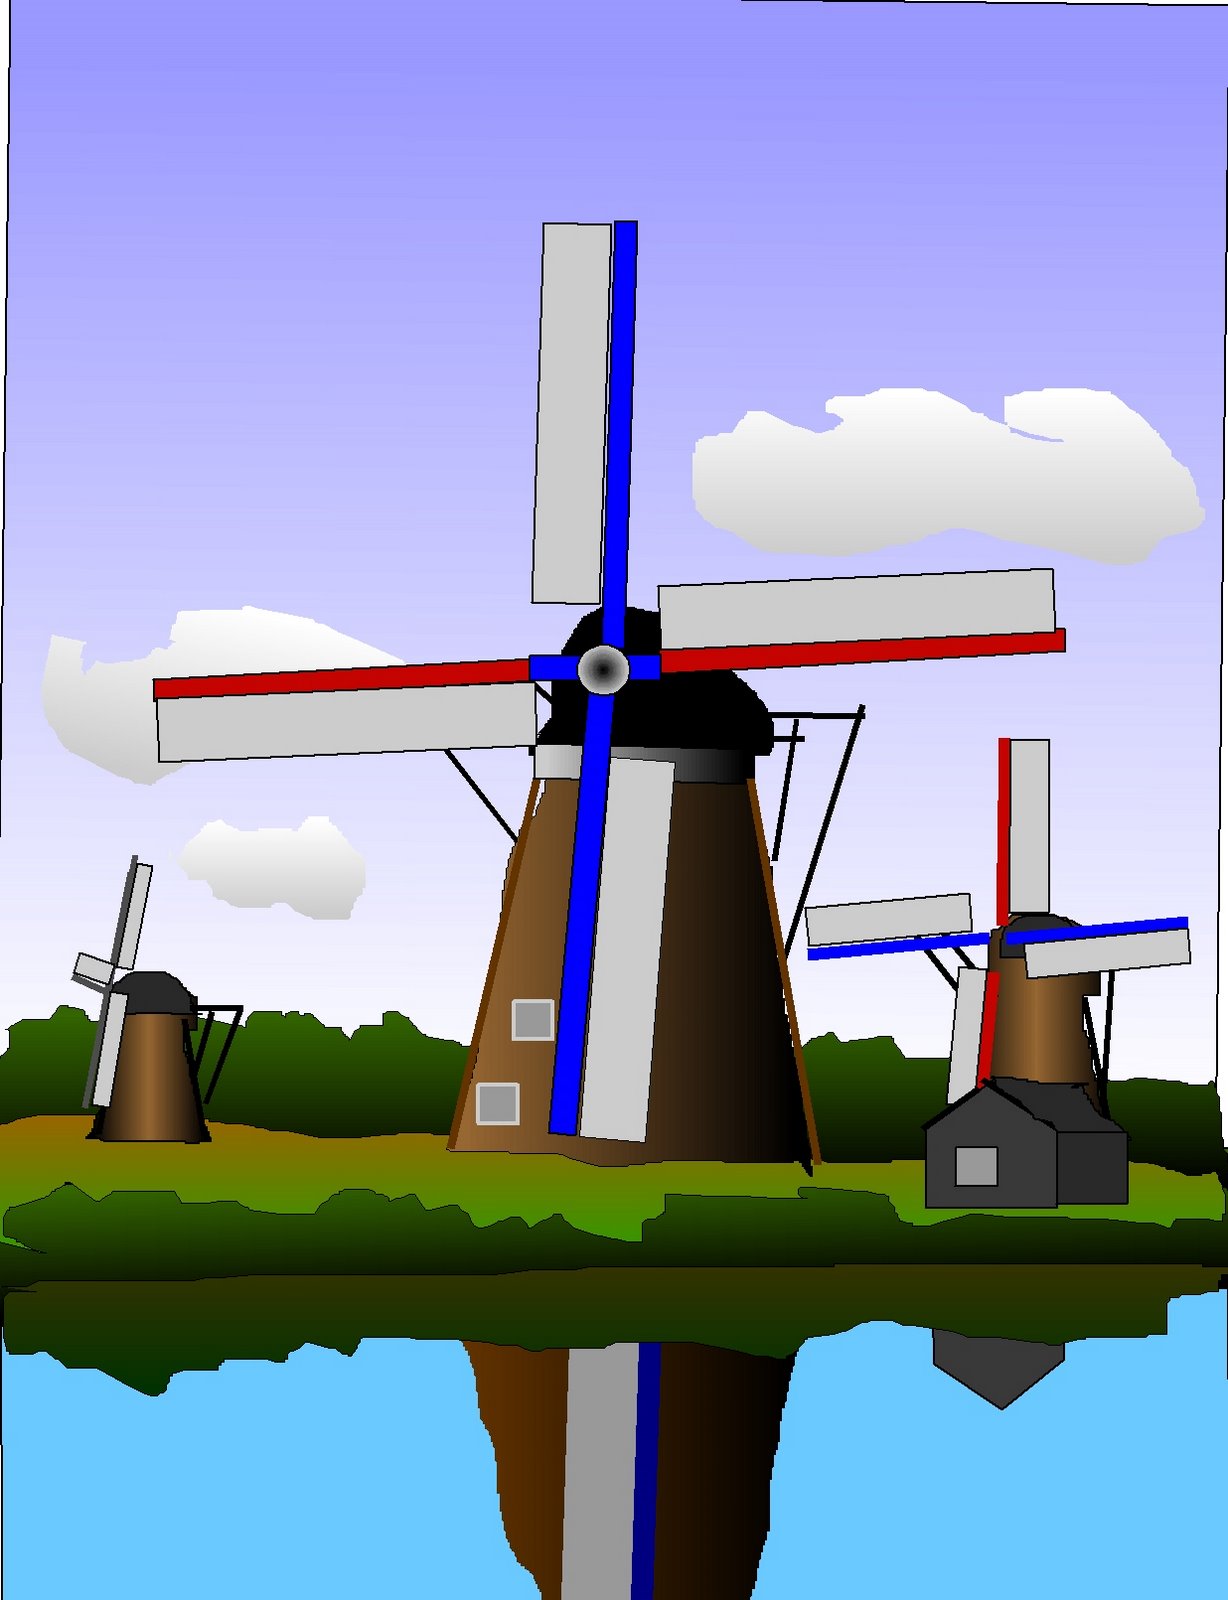 [WindmillsinHolland.jpg]